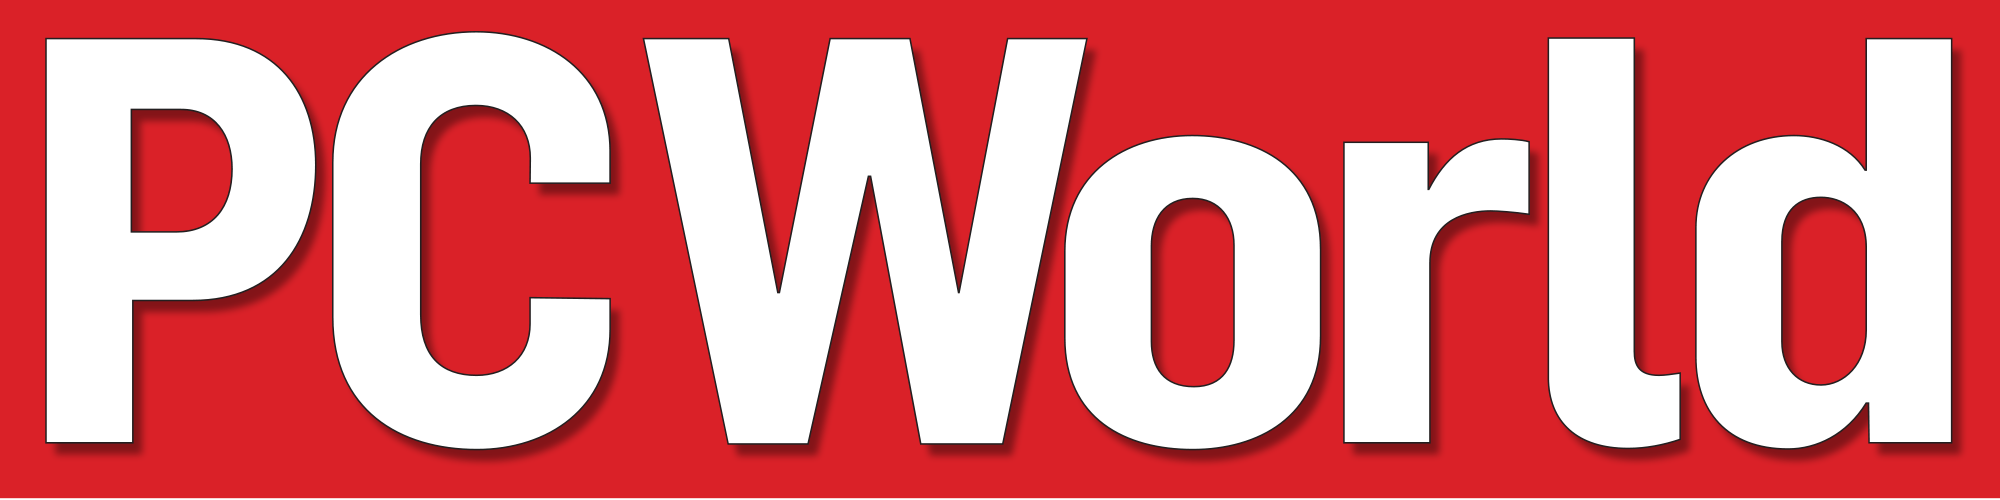 PC World Logo - File:PC World logo.svg - Wikimedia Commons